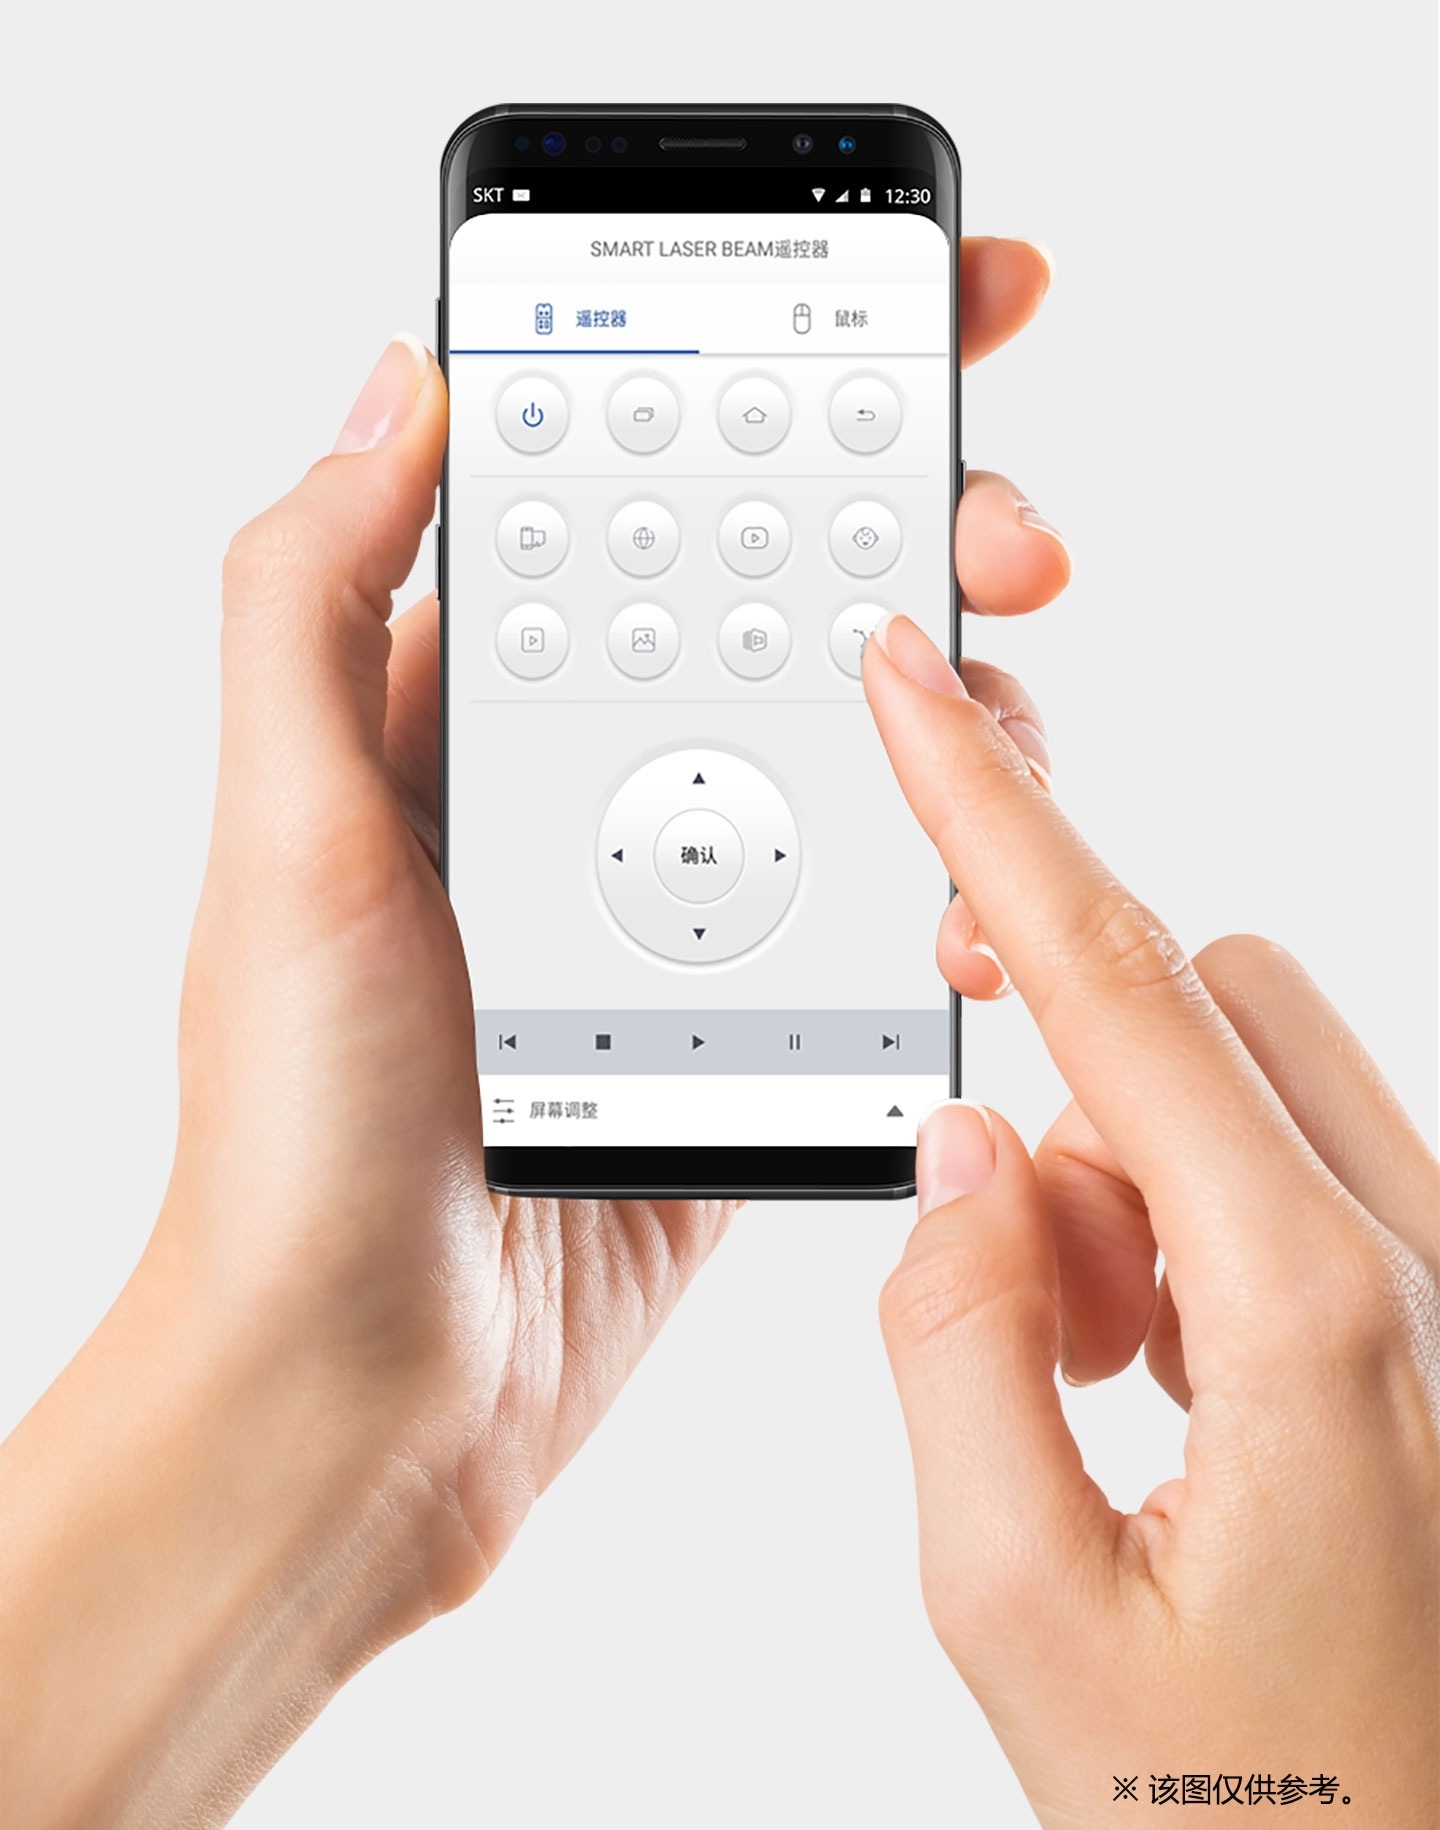 ※ 遥控器APP可以在安卓4.1以上及iOS7以上中安装及使用。